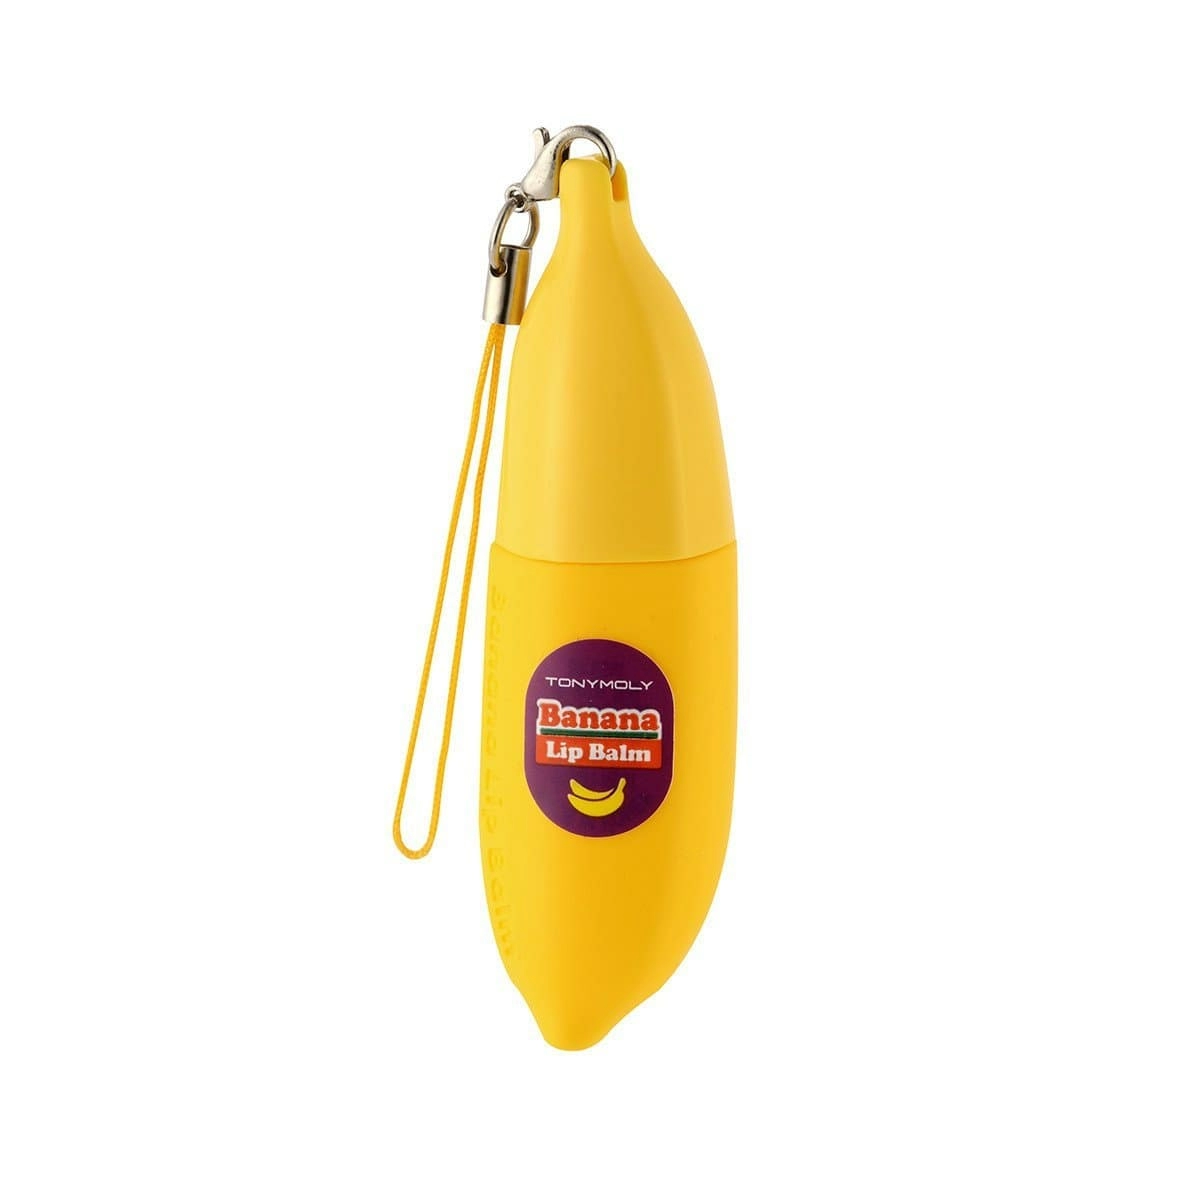 Tonymoly Бальзам для губ Magic Food Banana Lip Balm с экстрактом банана, 7 гр.